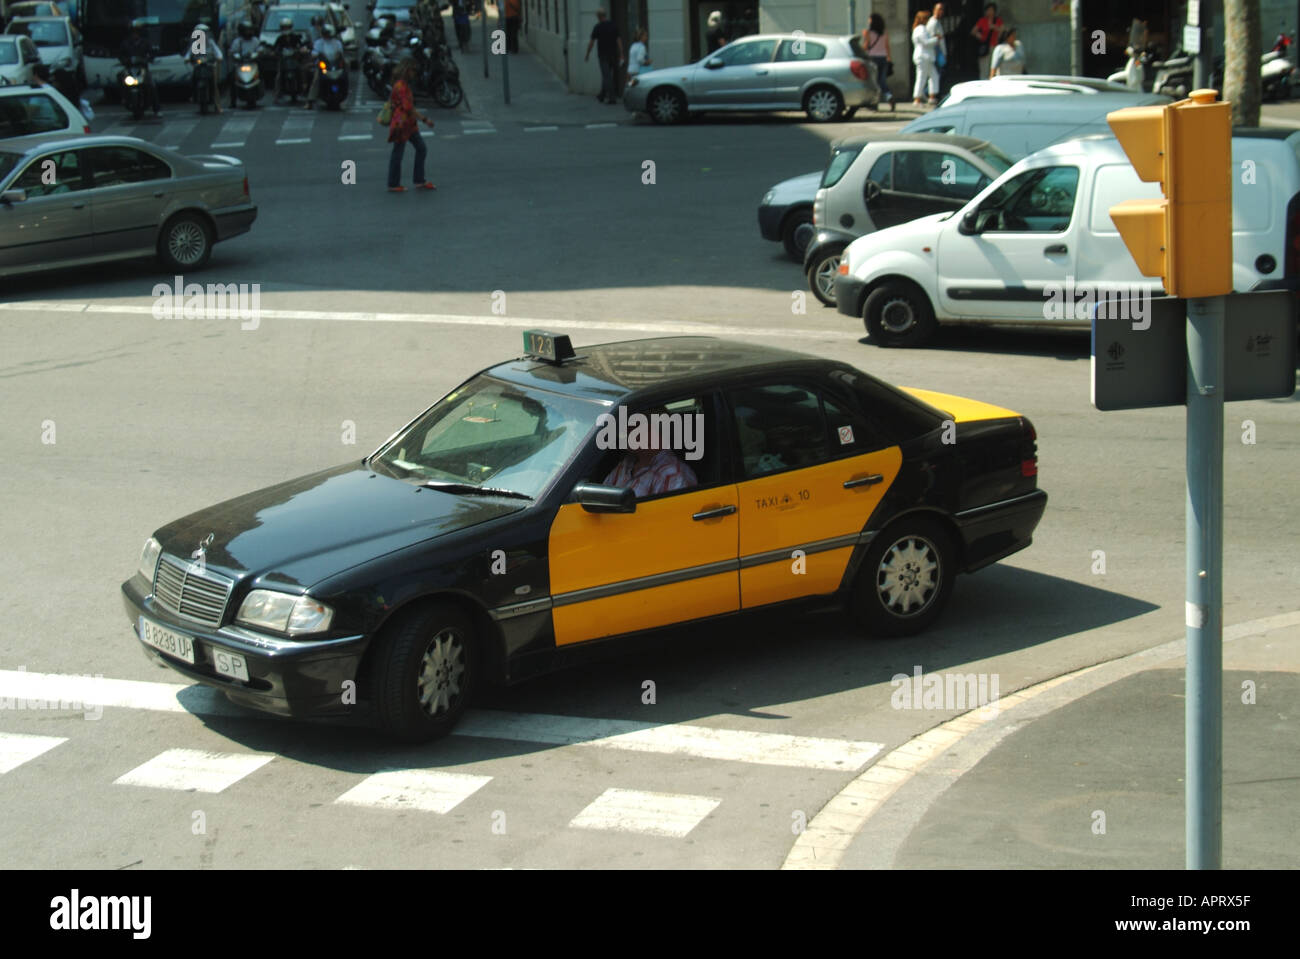 Vue d'en haut, vue sur Barcelone, taxi noir et jaune emblématique avec conduite de passagers dans la rue animée espagnole Catalogne Espagne UE Banque D'Images